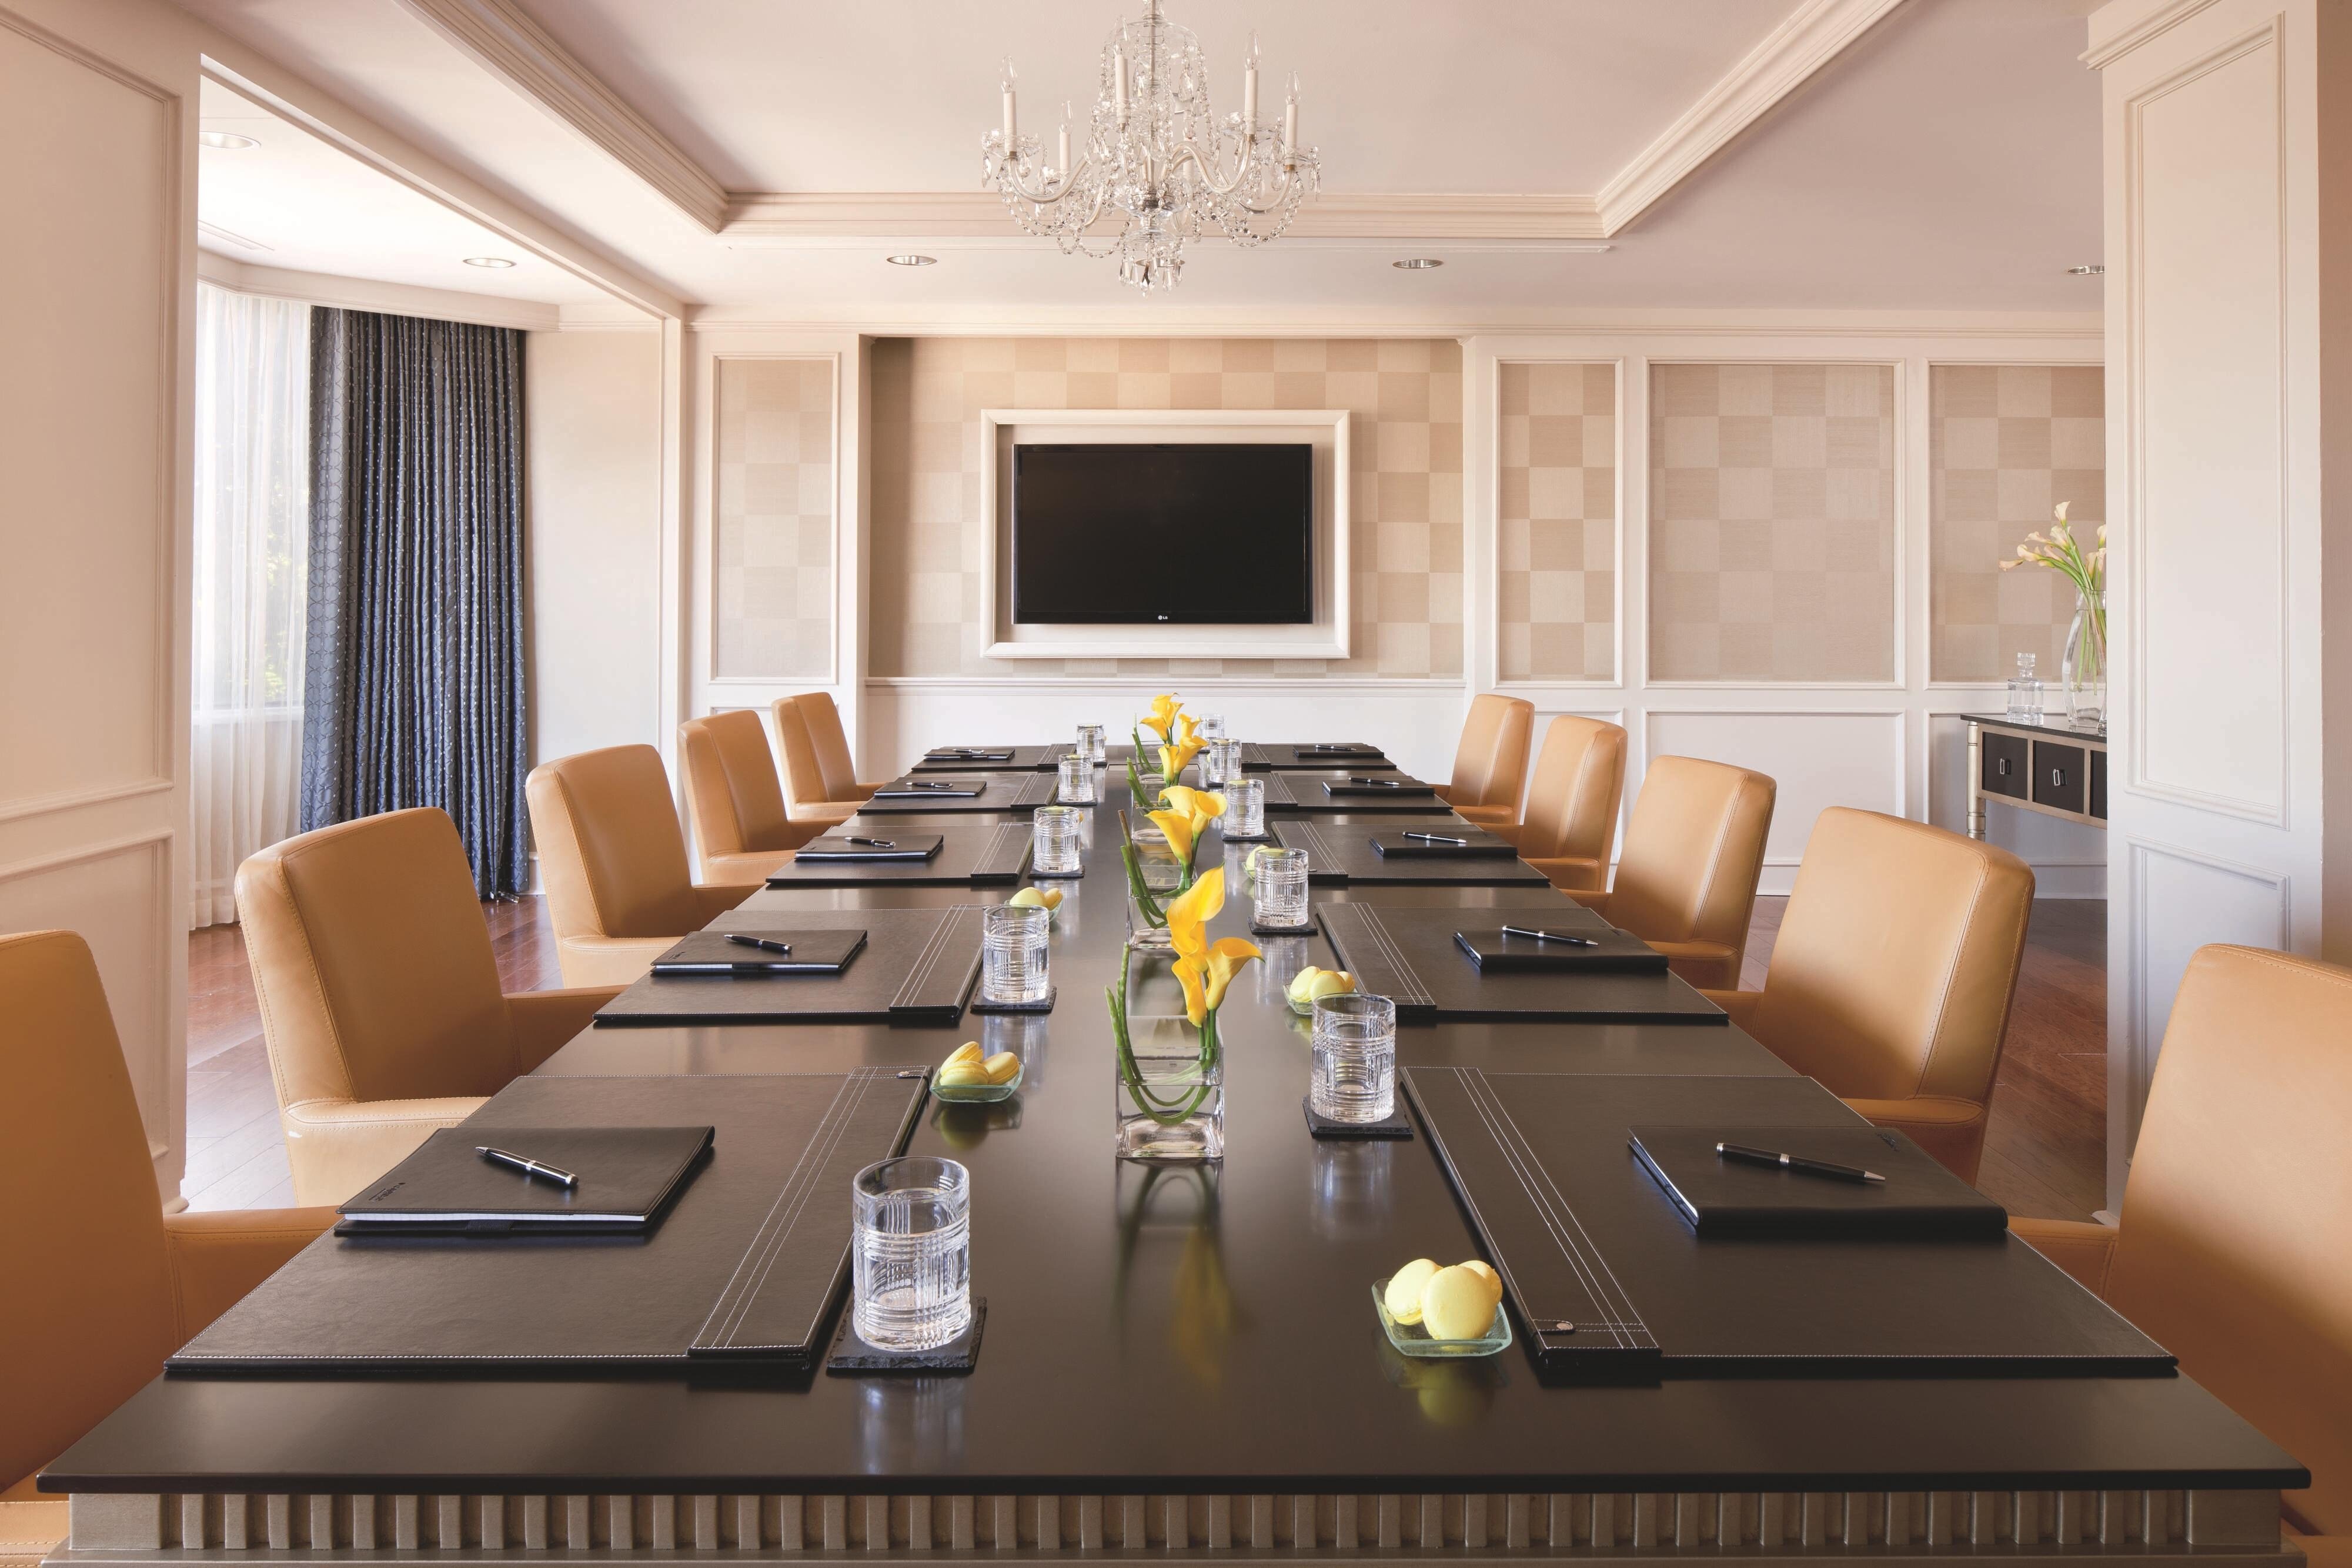 Directors Boardroom